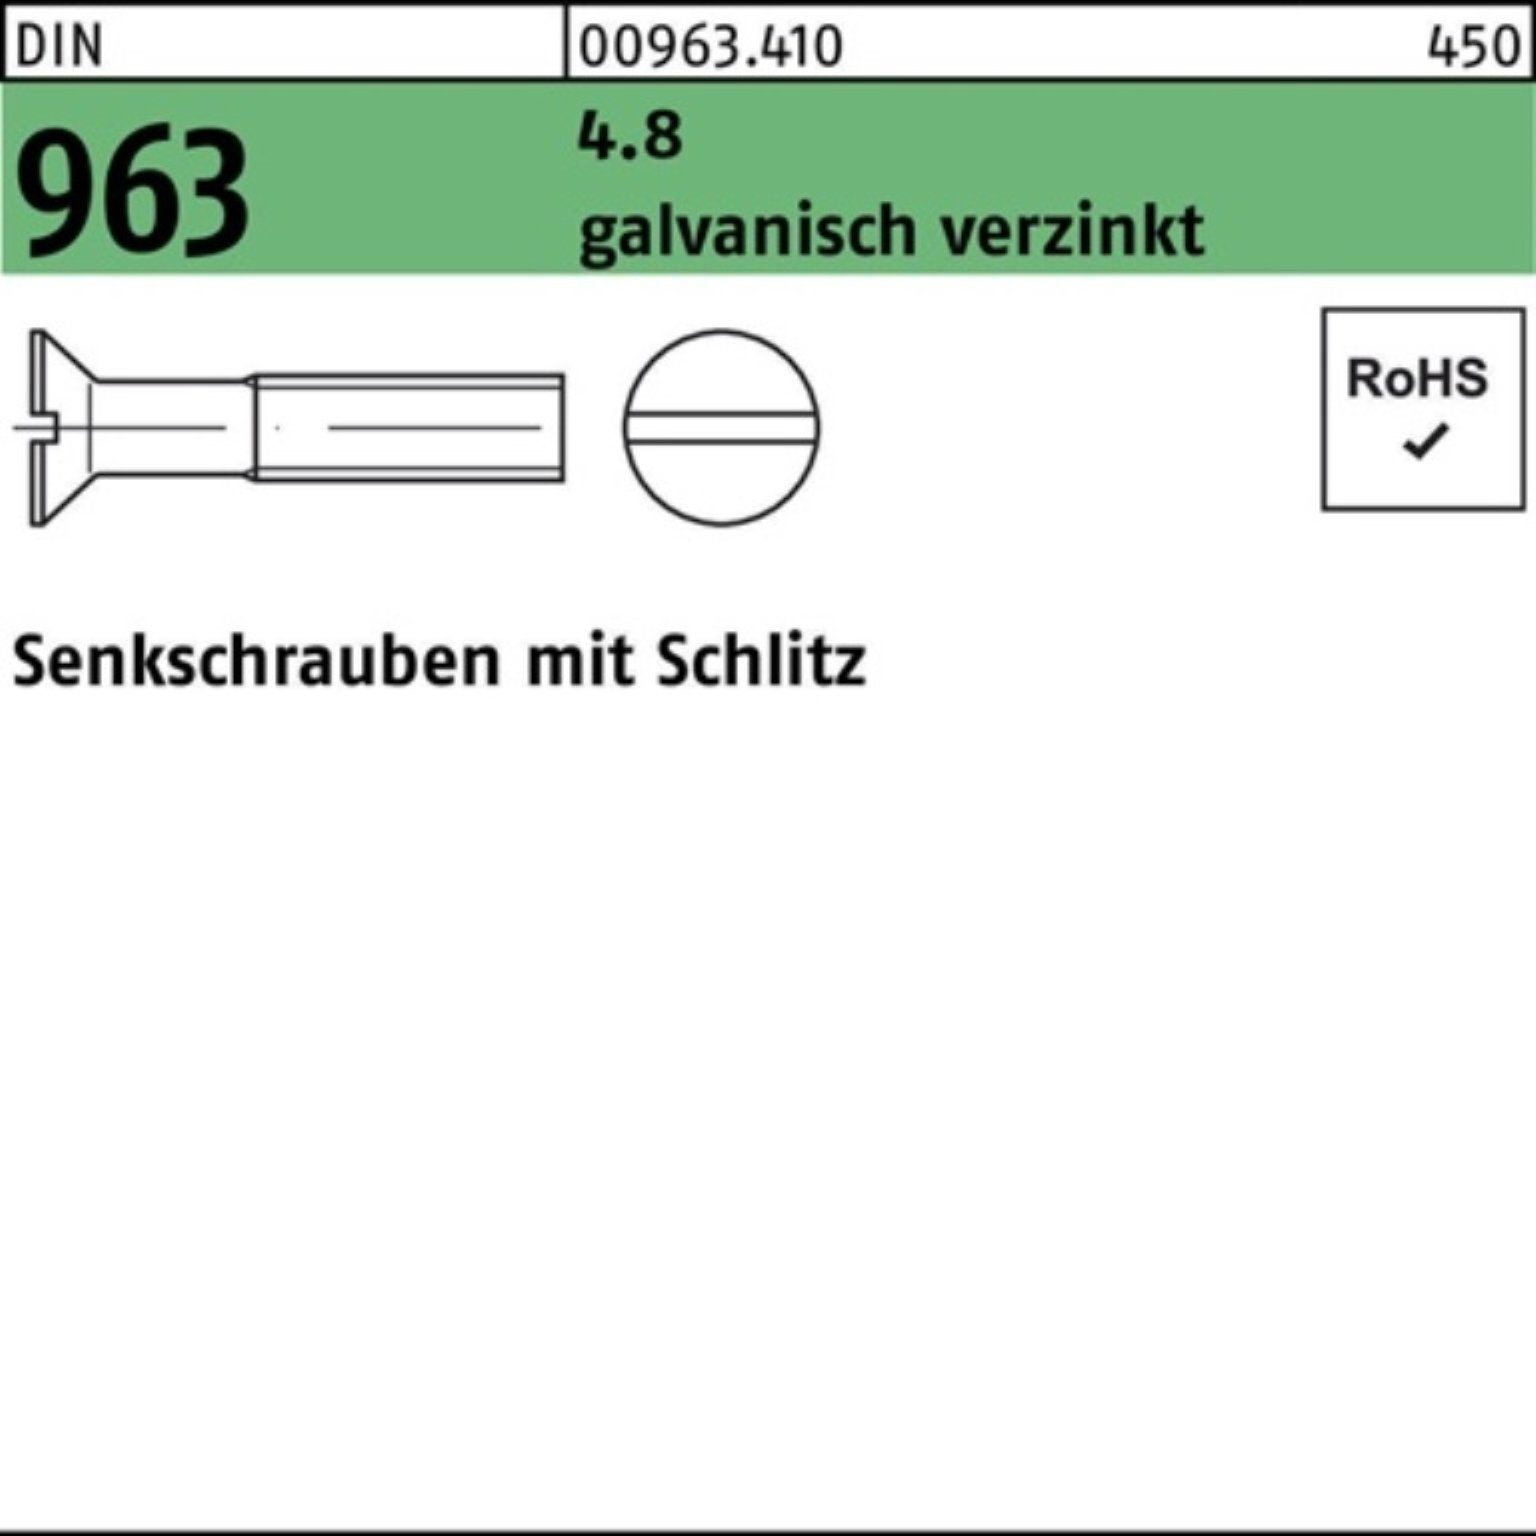 Reyher Senkschraube 2000er Pack Senkschraube Schlitz 963 8 galv.verz. 2000 S DIN 4.8 M2,5x